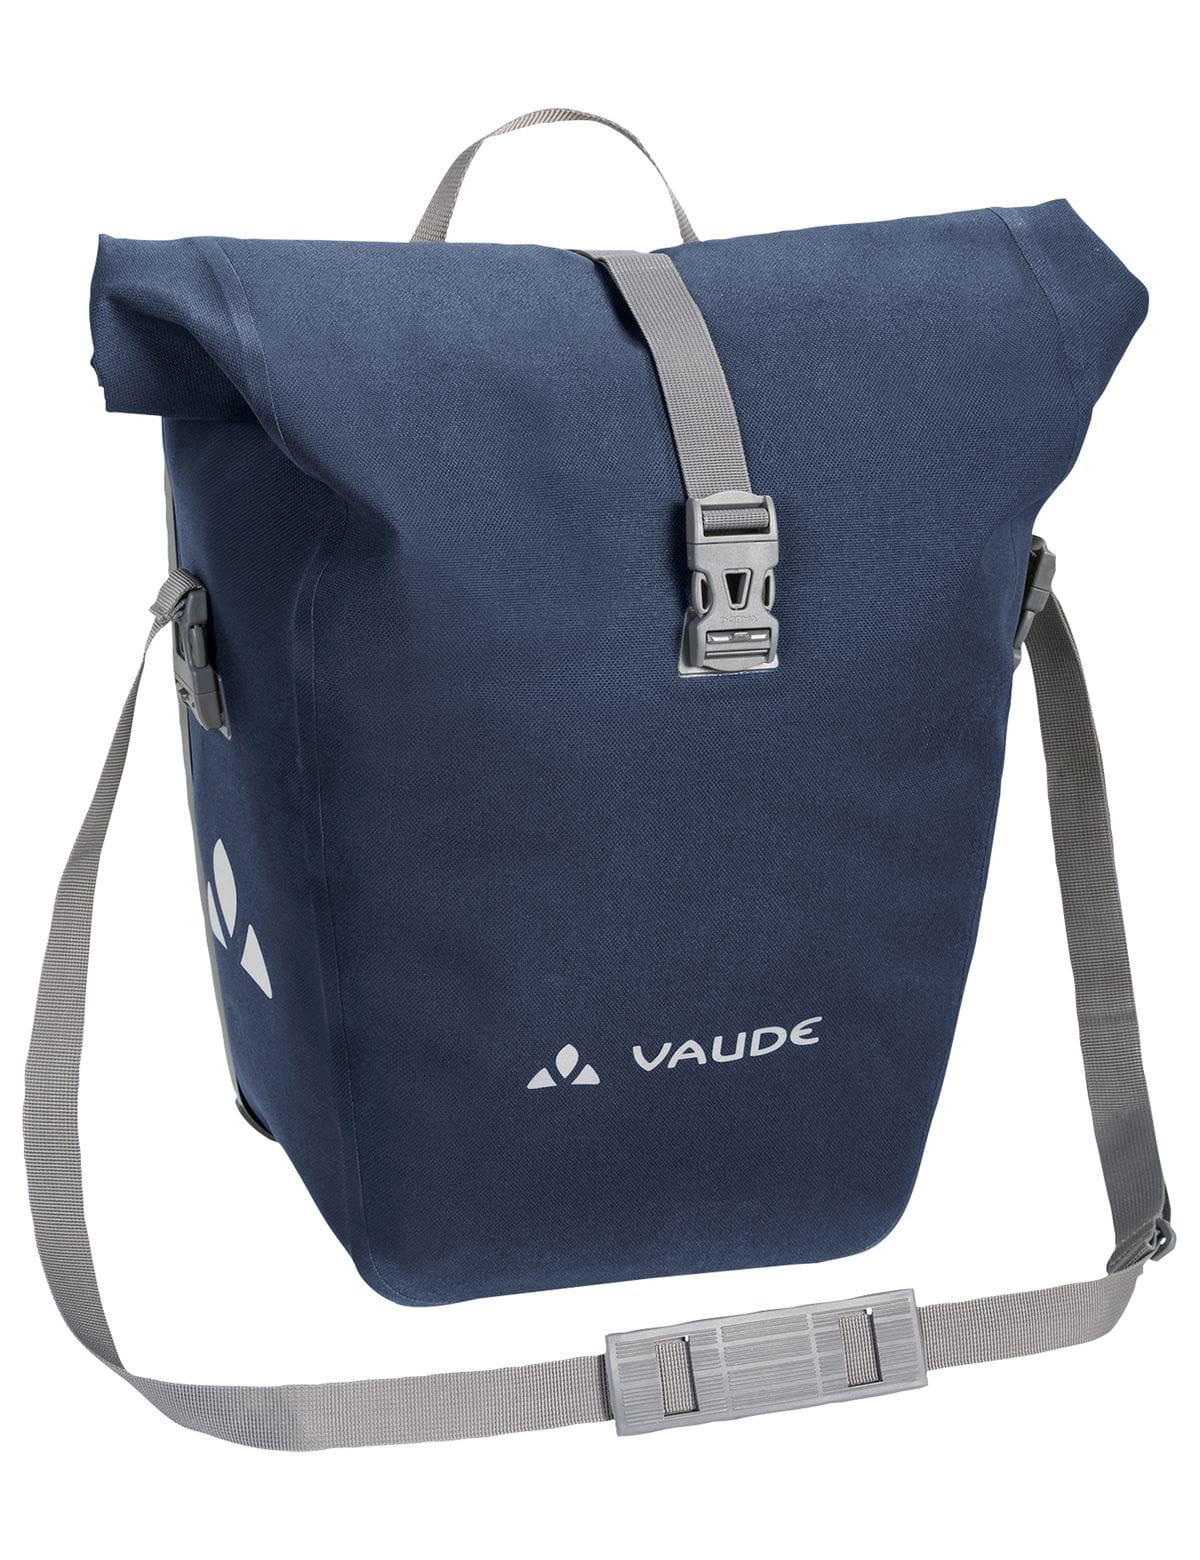 VAUDE Aqua Back Deluxe Single Rear Pannier Bag